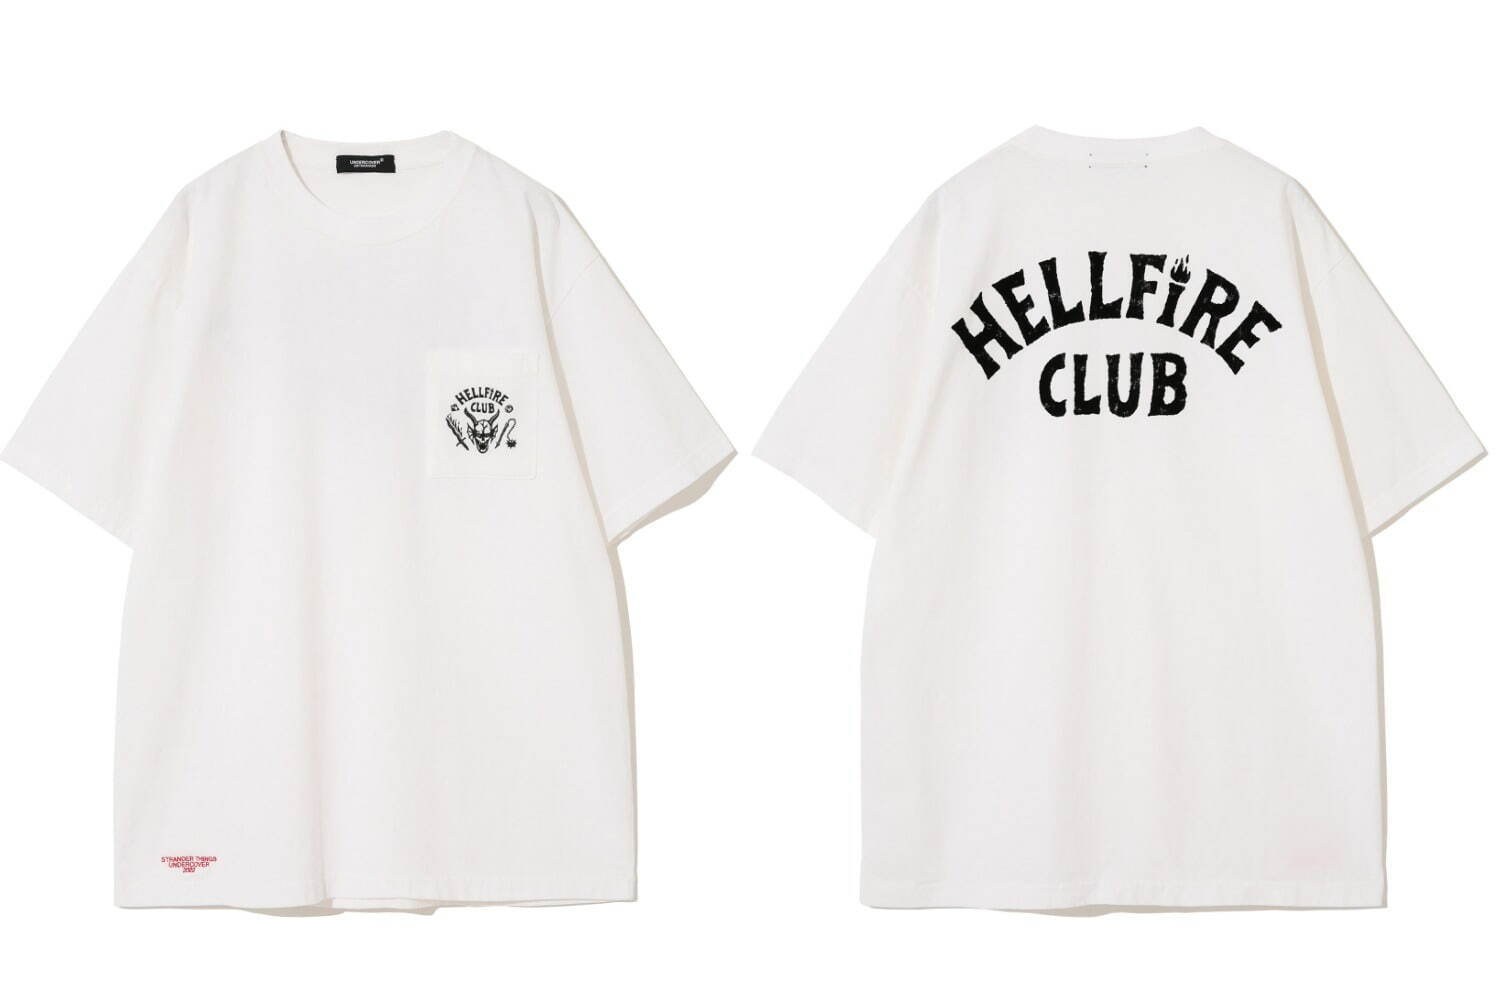 Tシャツ(ホワイト) 22,000円